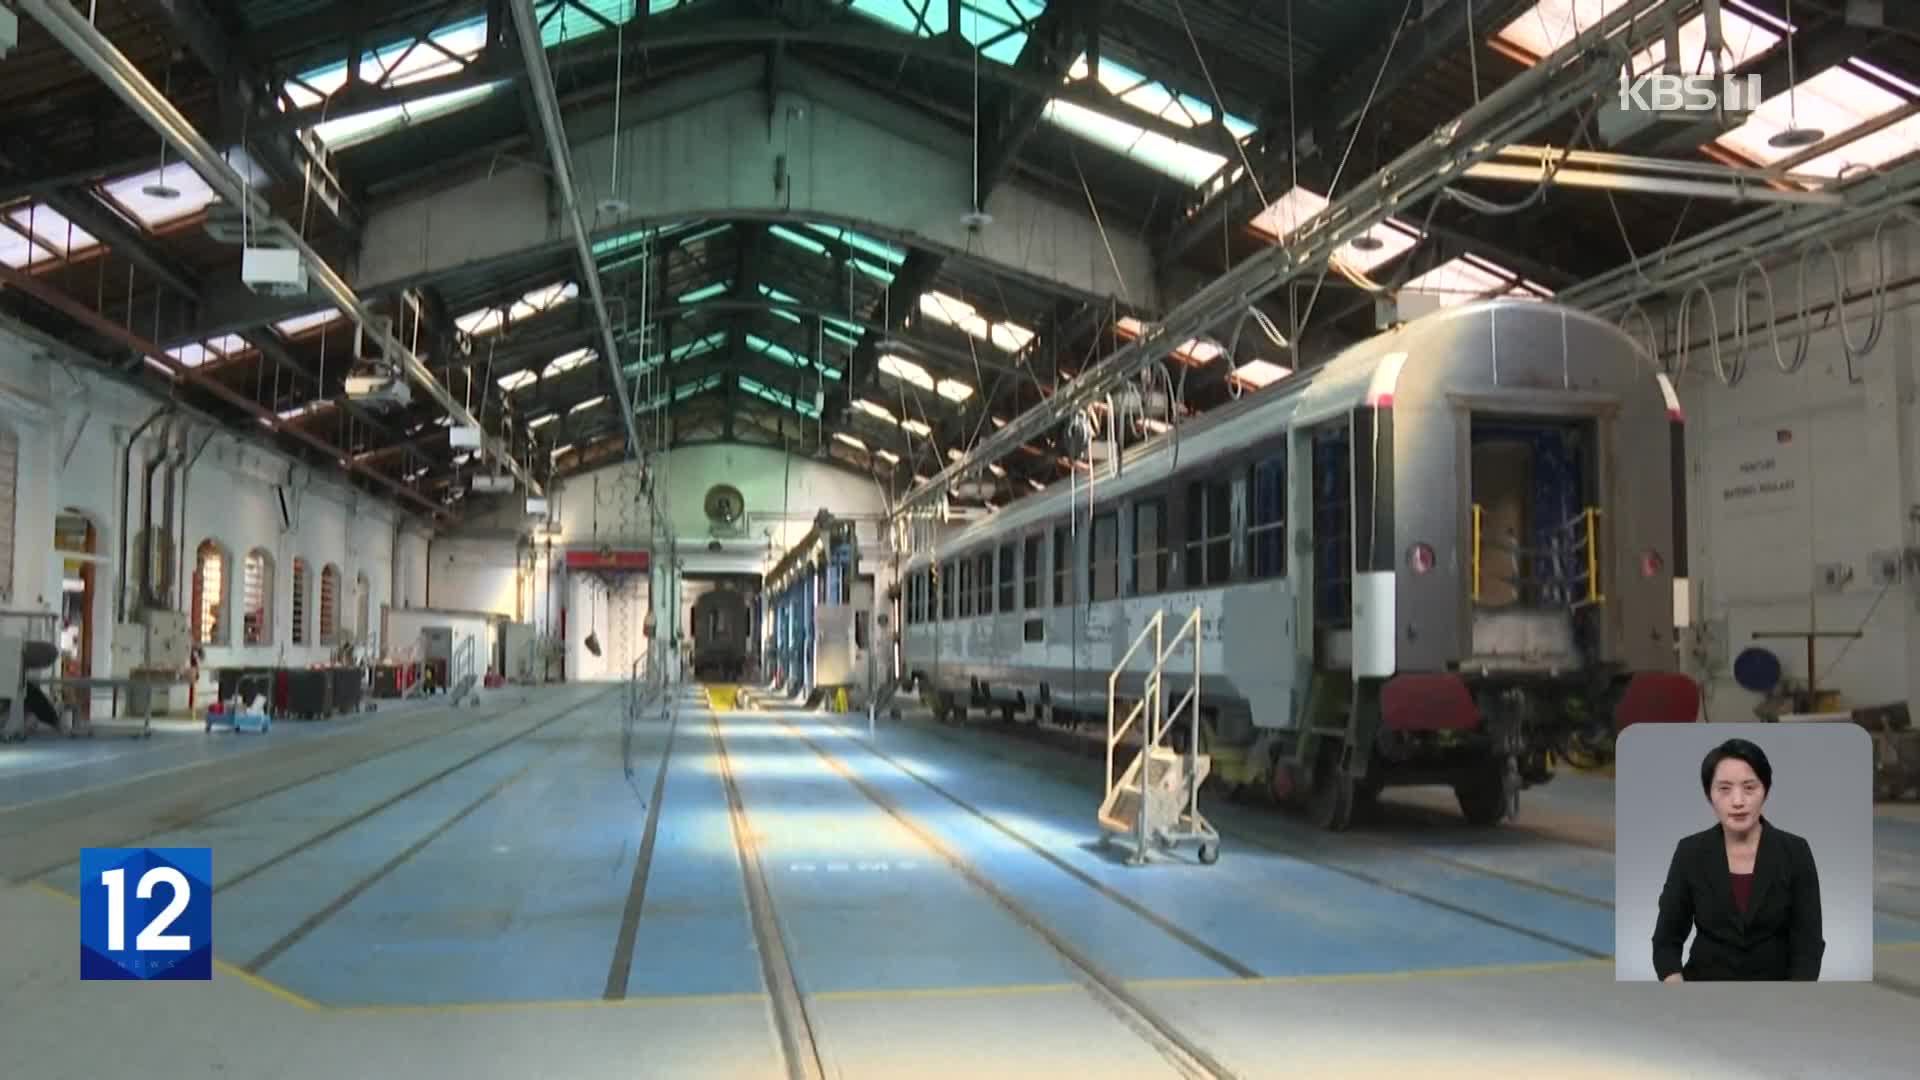 프랑스, 폐열차 재활용해 야간열차 재운행 결정